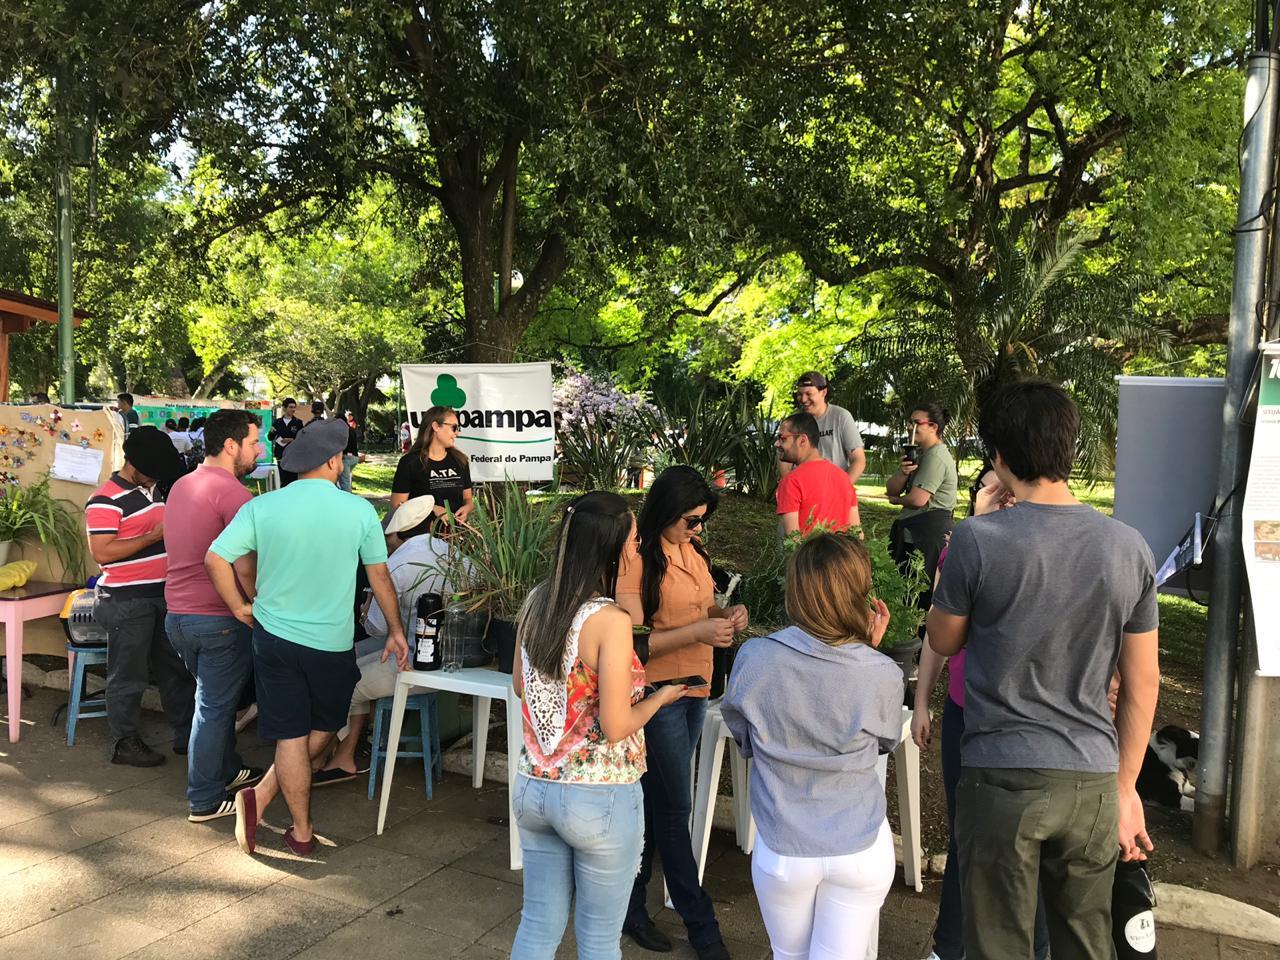 Em uma praça, plantas são expostas em mesas e há um banner com o logo da Unipampa. Cerca de 15 pessoas em pé observam a mostra.